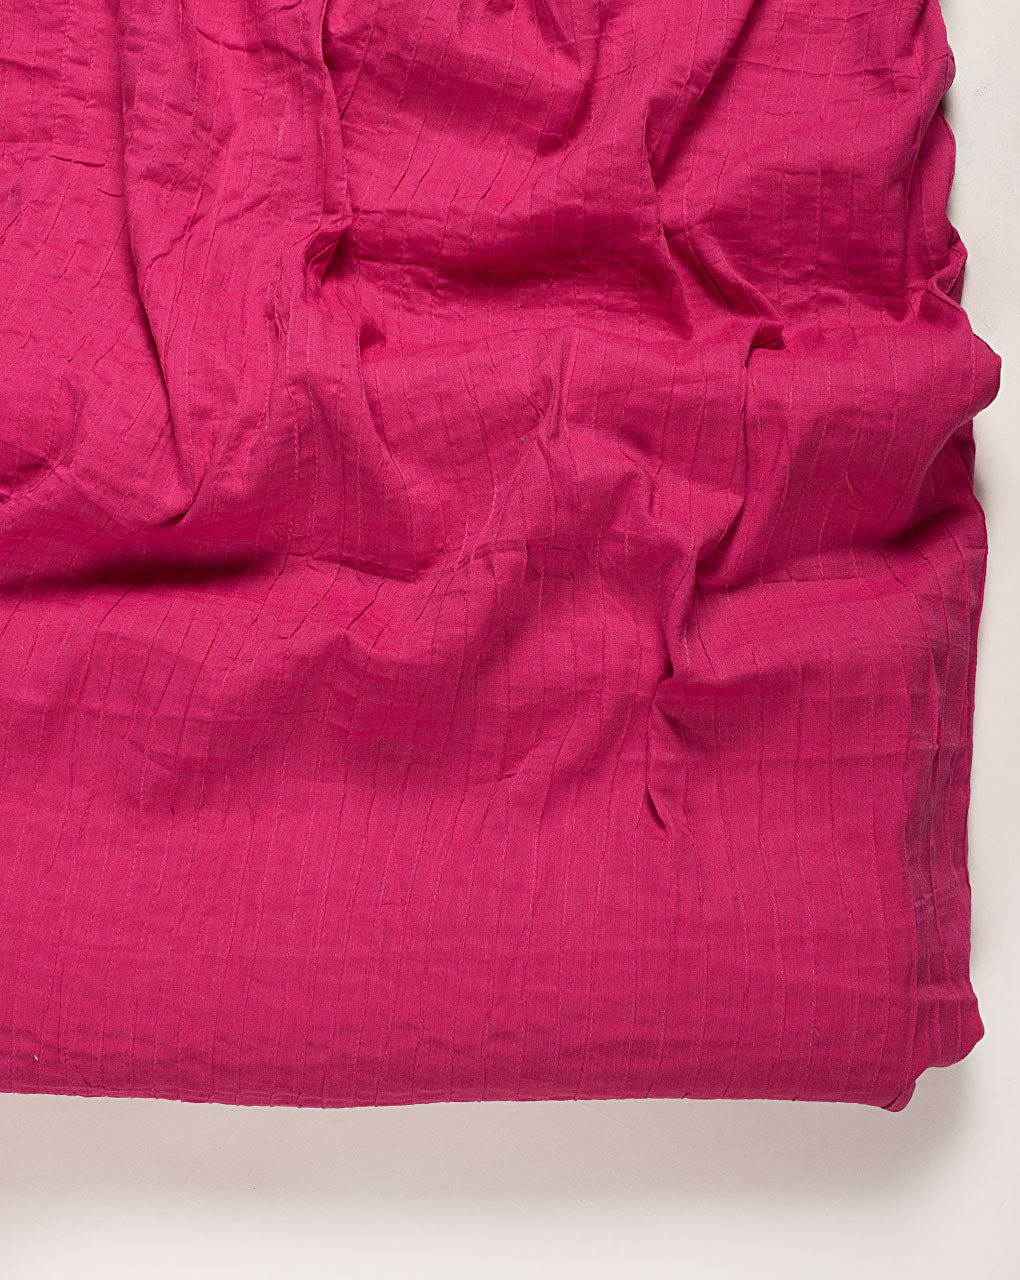 Fuchsia Pin-Tucks Rayon Fabric